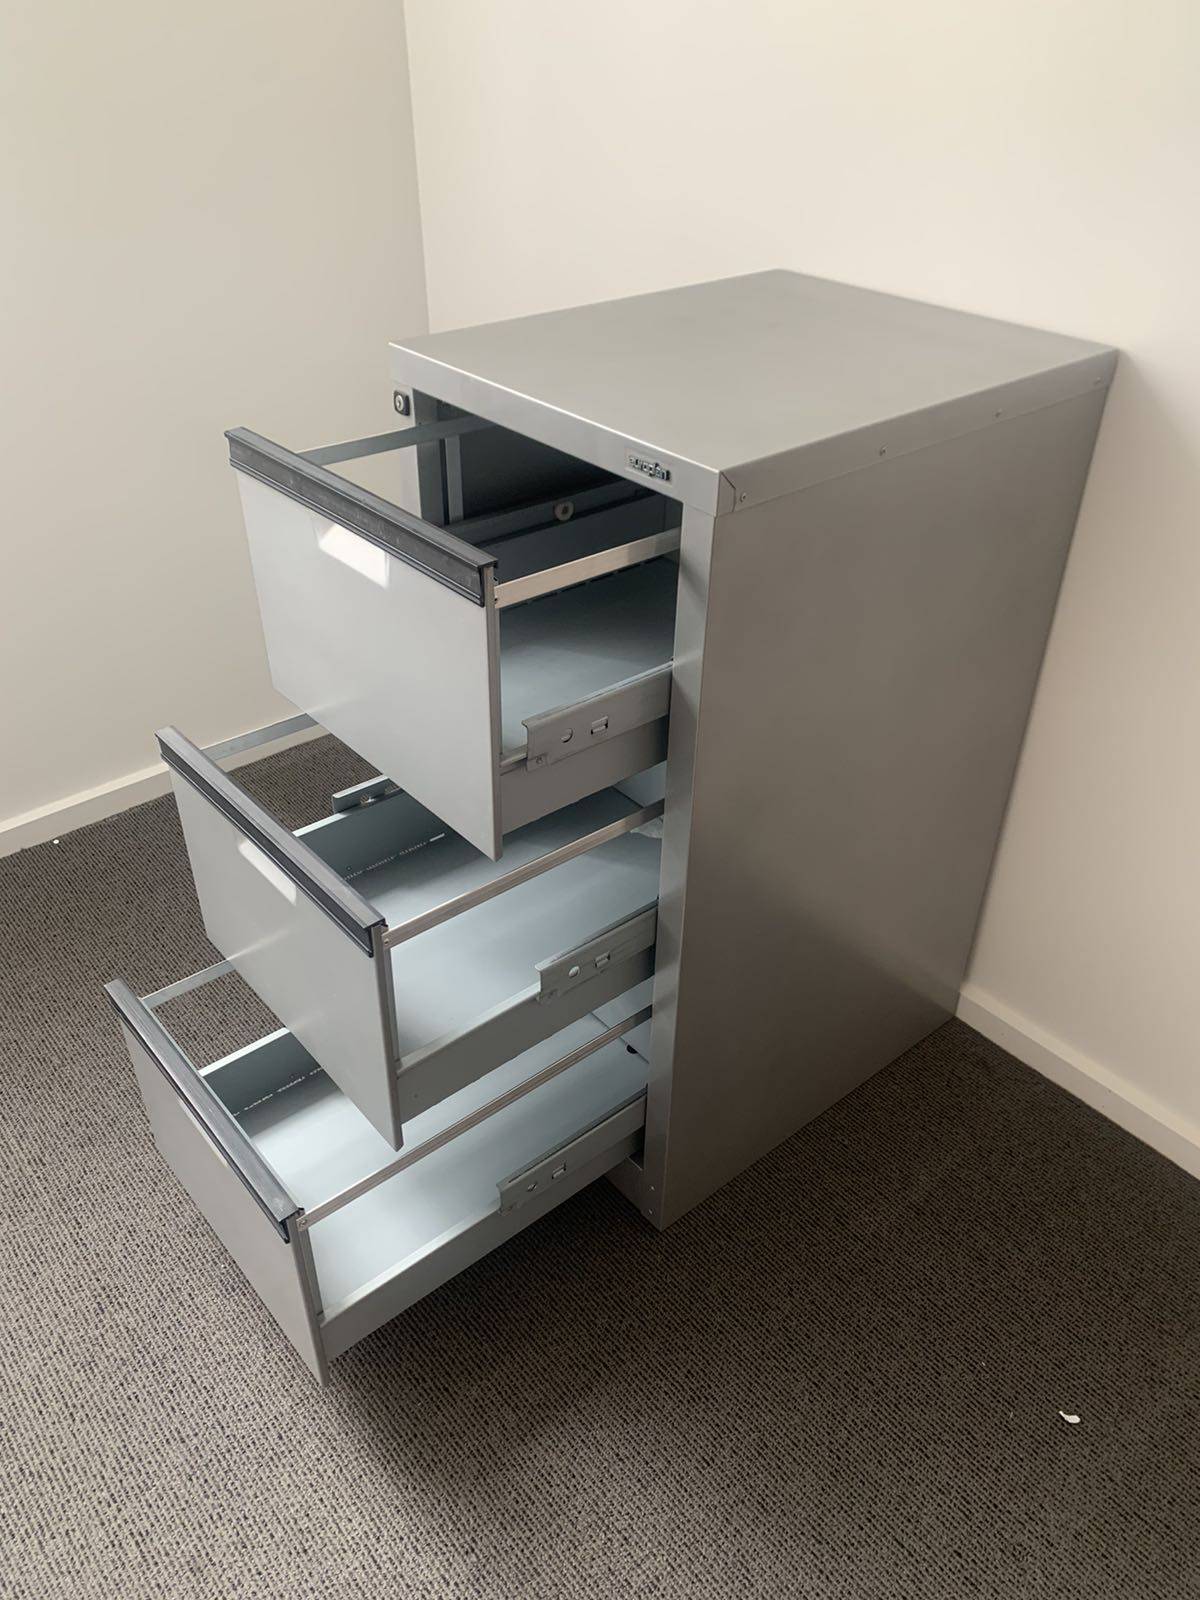 3 drawer filing cabinet by Europlan